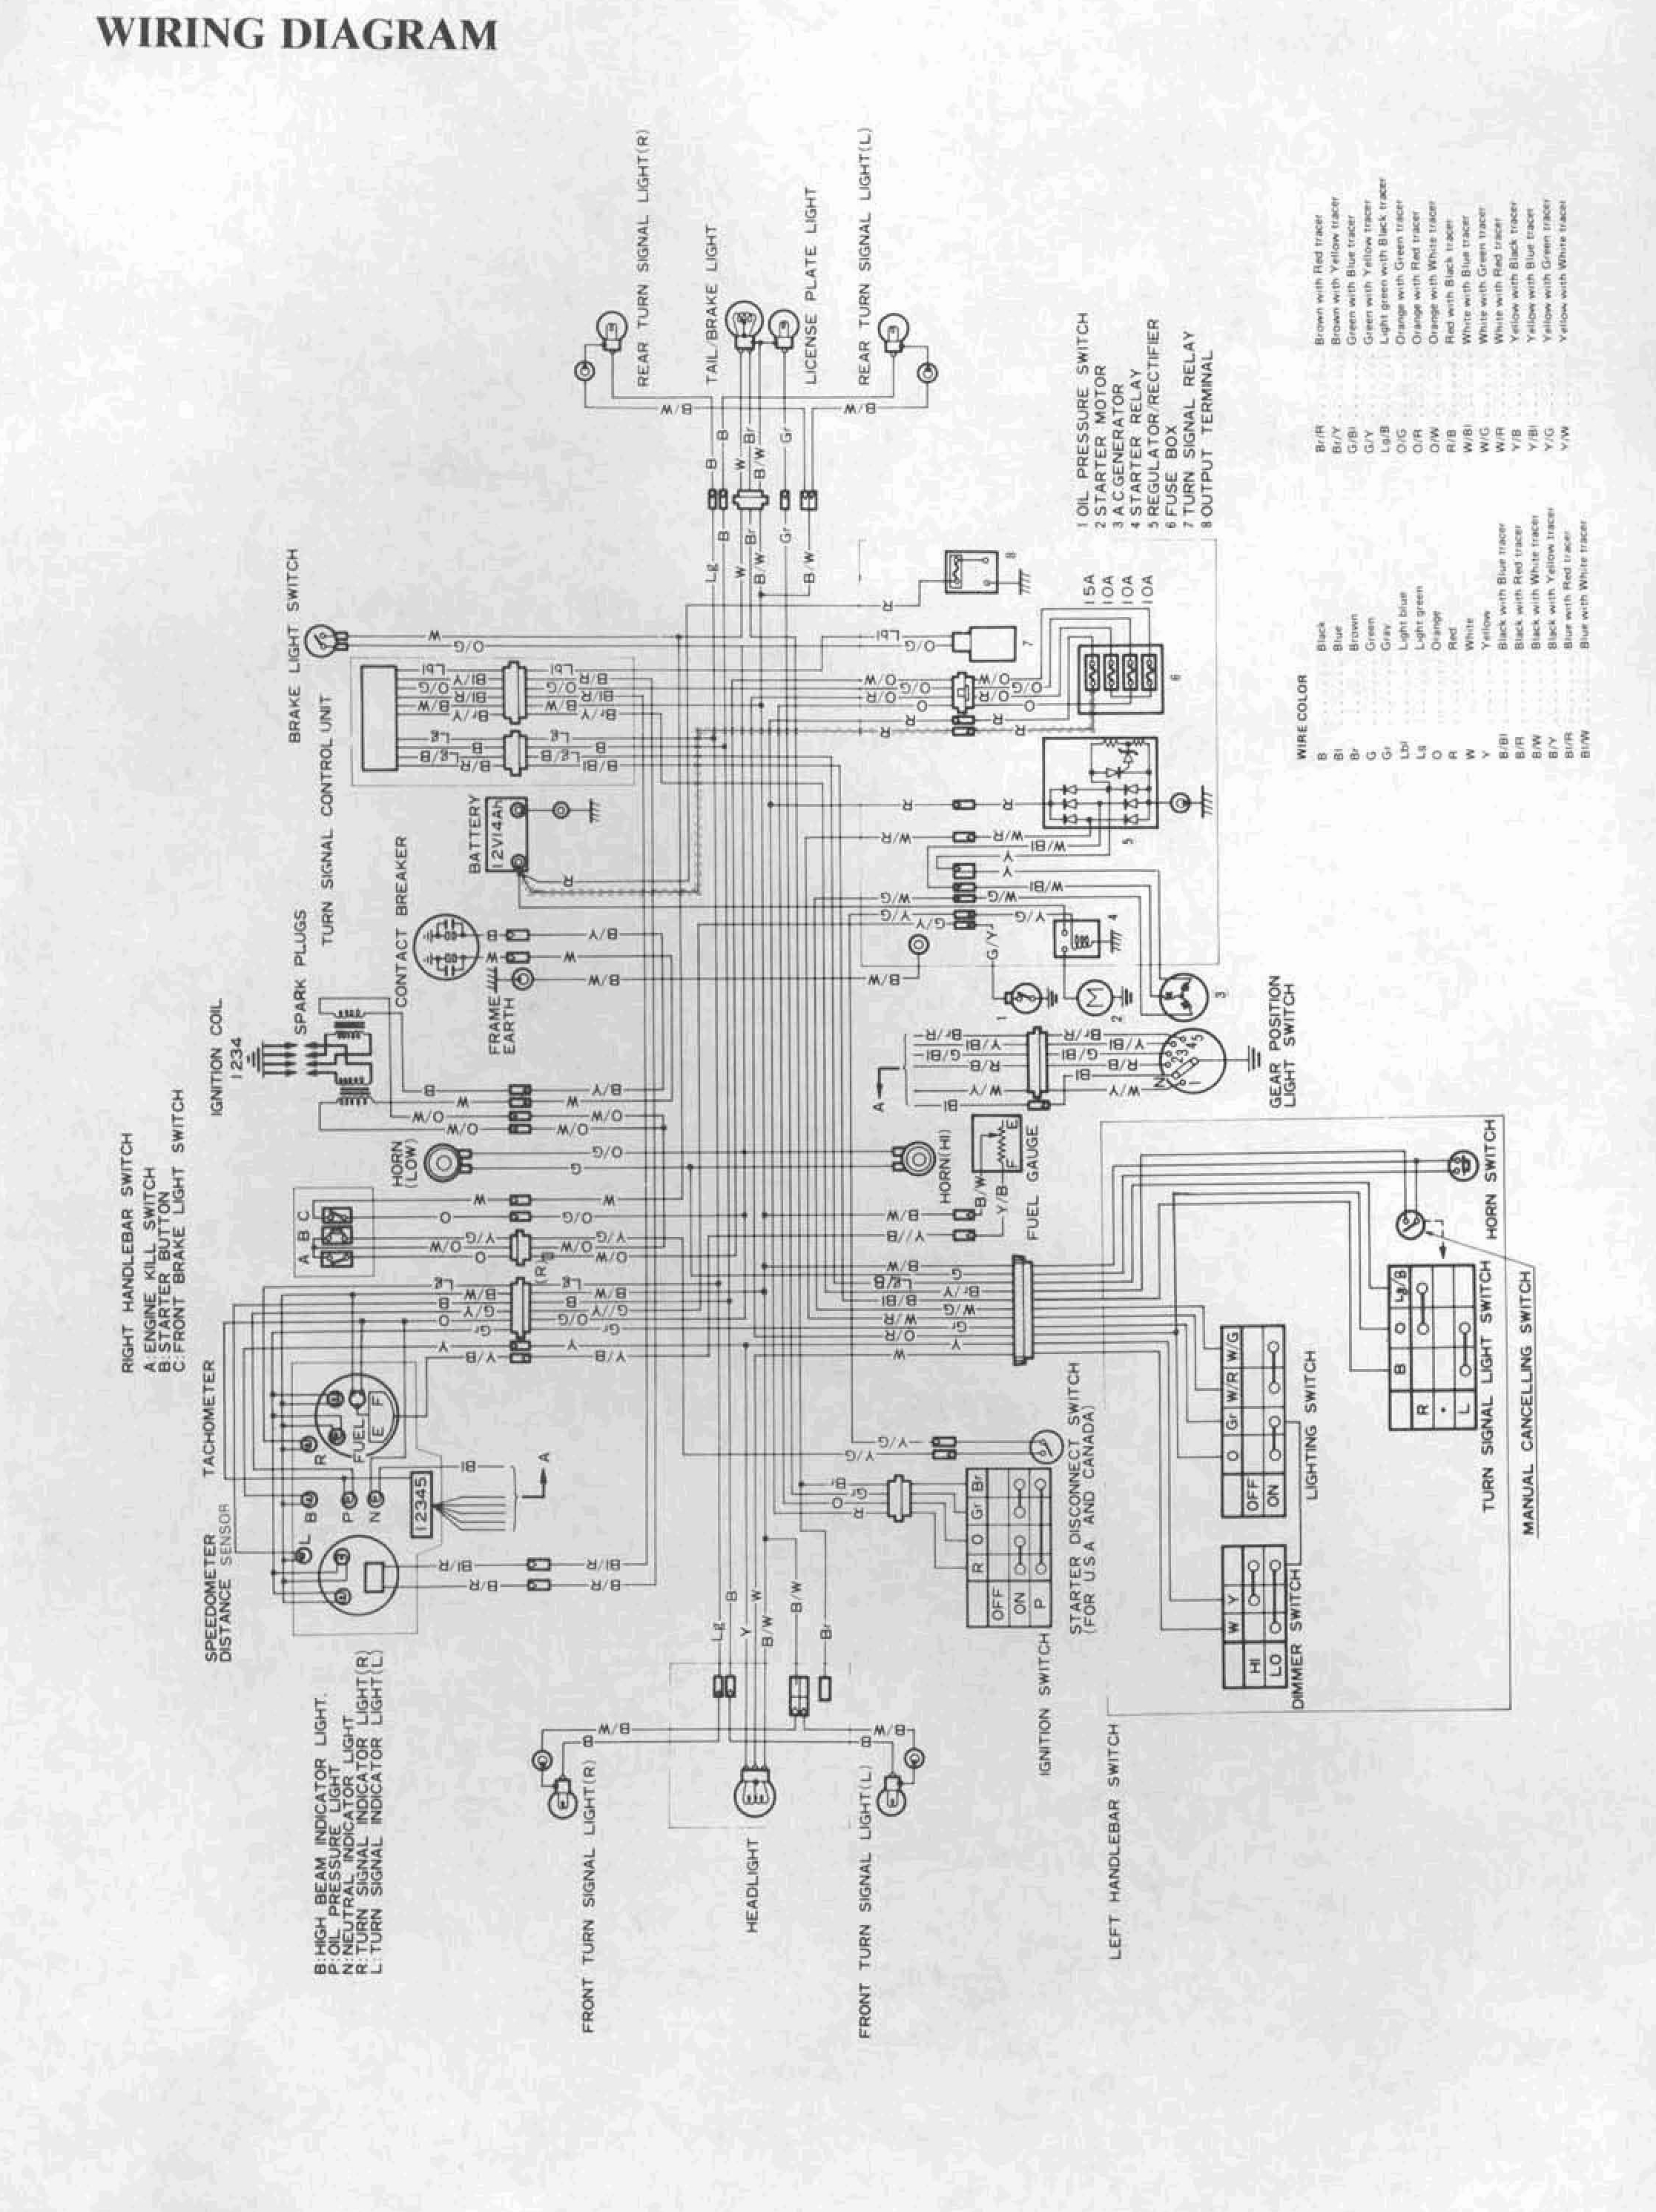 Wiring Diagram Suzuki Gs 750 from gsarchive.bwringer.com